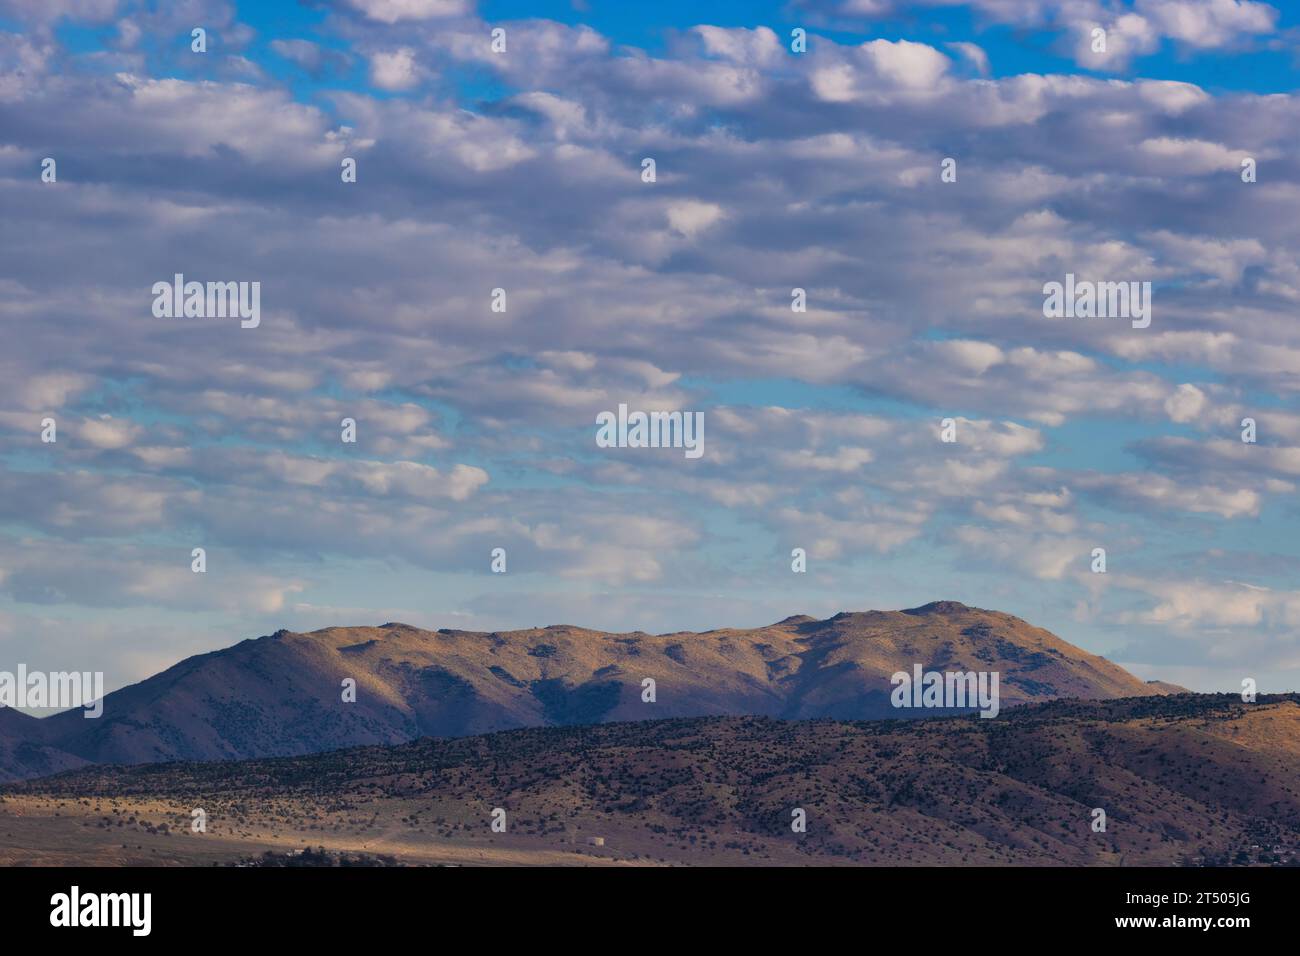 Nuages au-dessus des montagnes dans cette vue de paysage depuis l'aéroport de Stead dans le Nevada. Banque D'Images